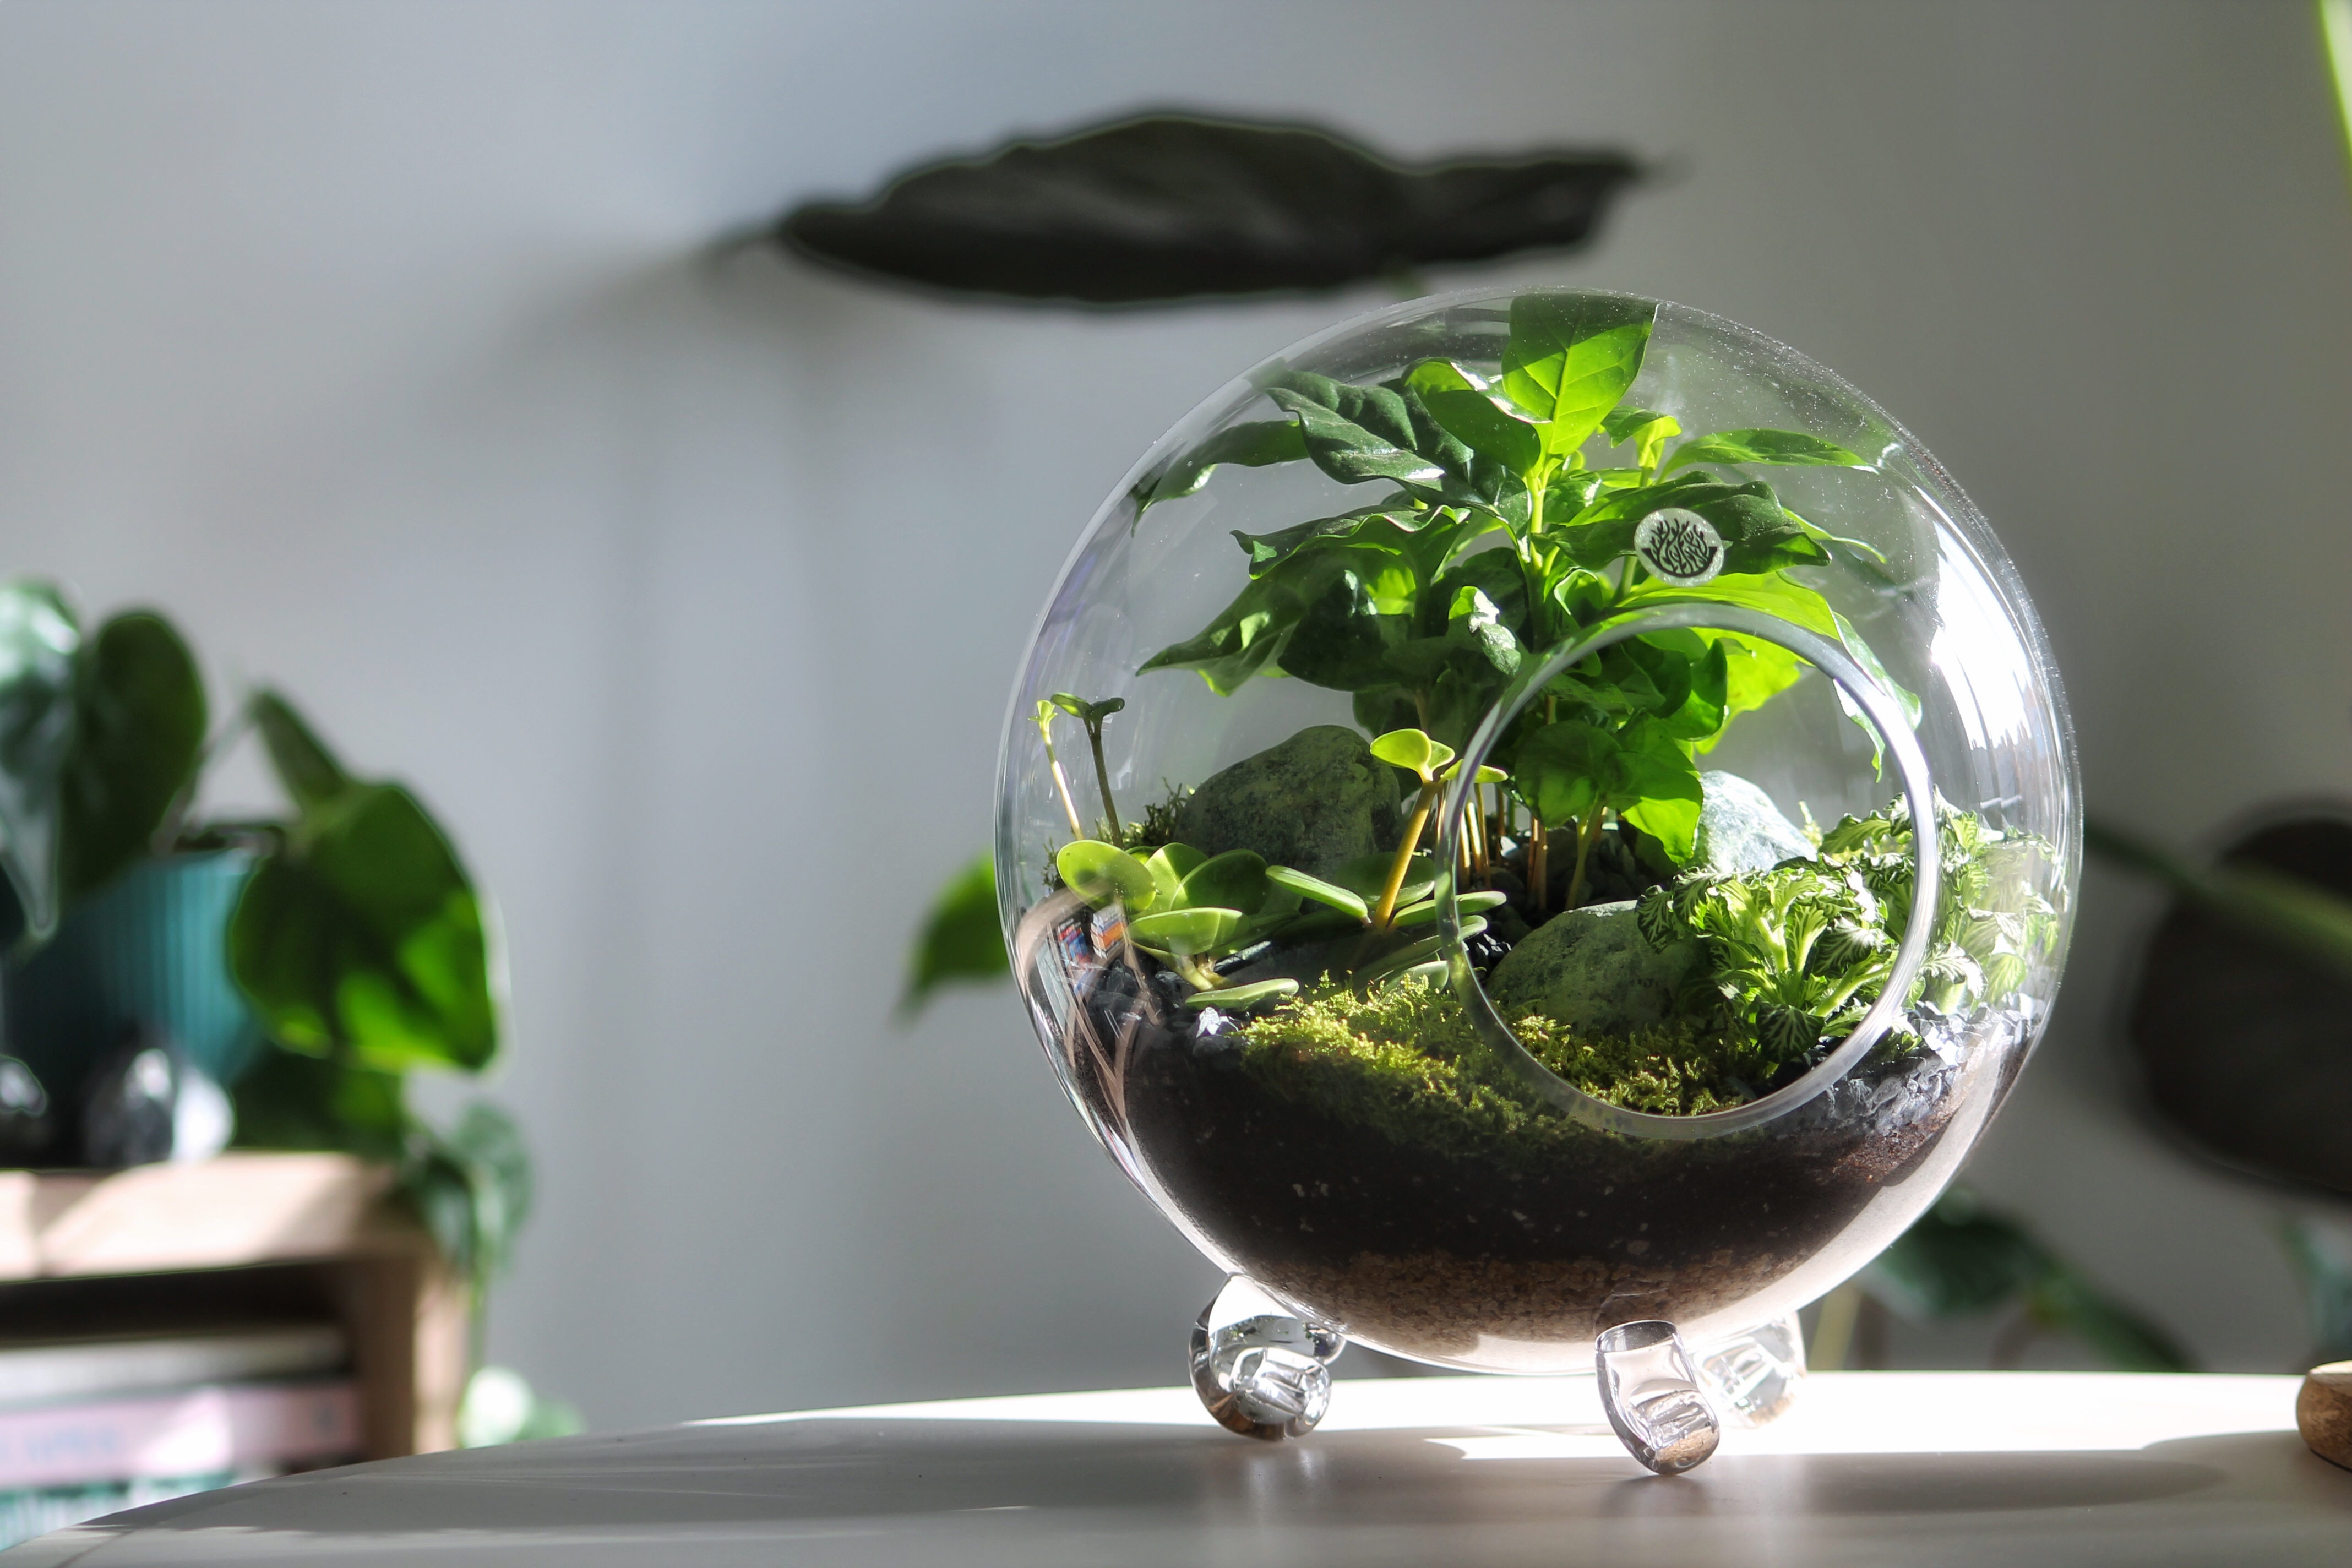 فن التيراريوم .. أبدع في تصميم أحواض زجاجية للنباتات